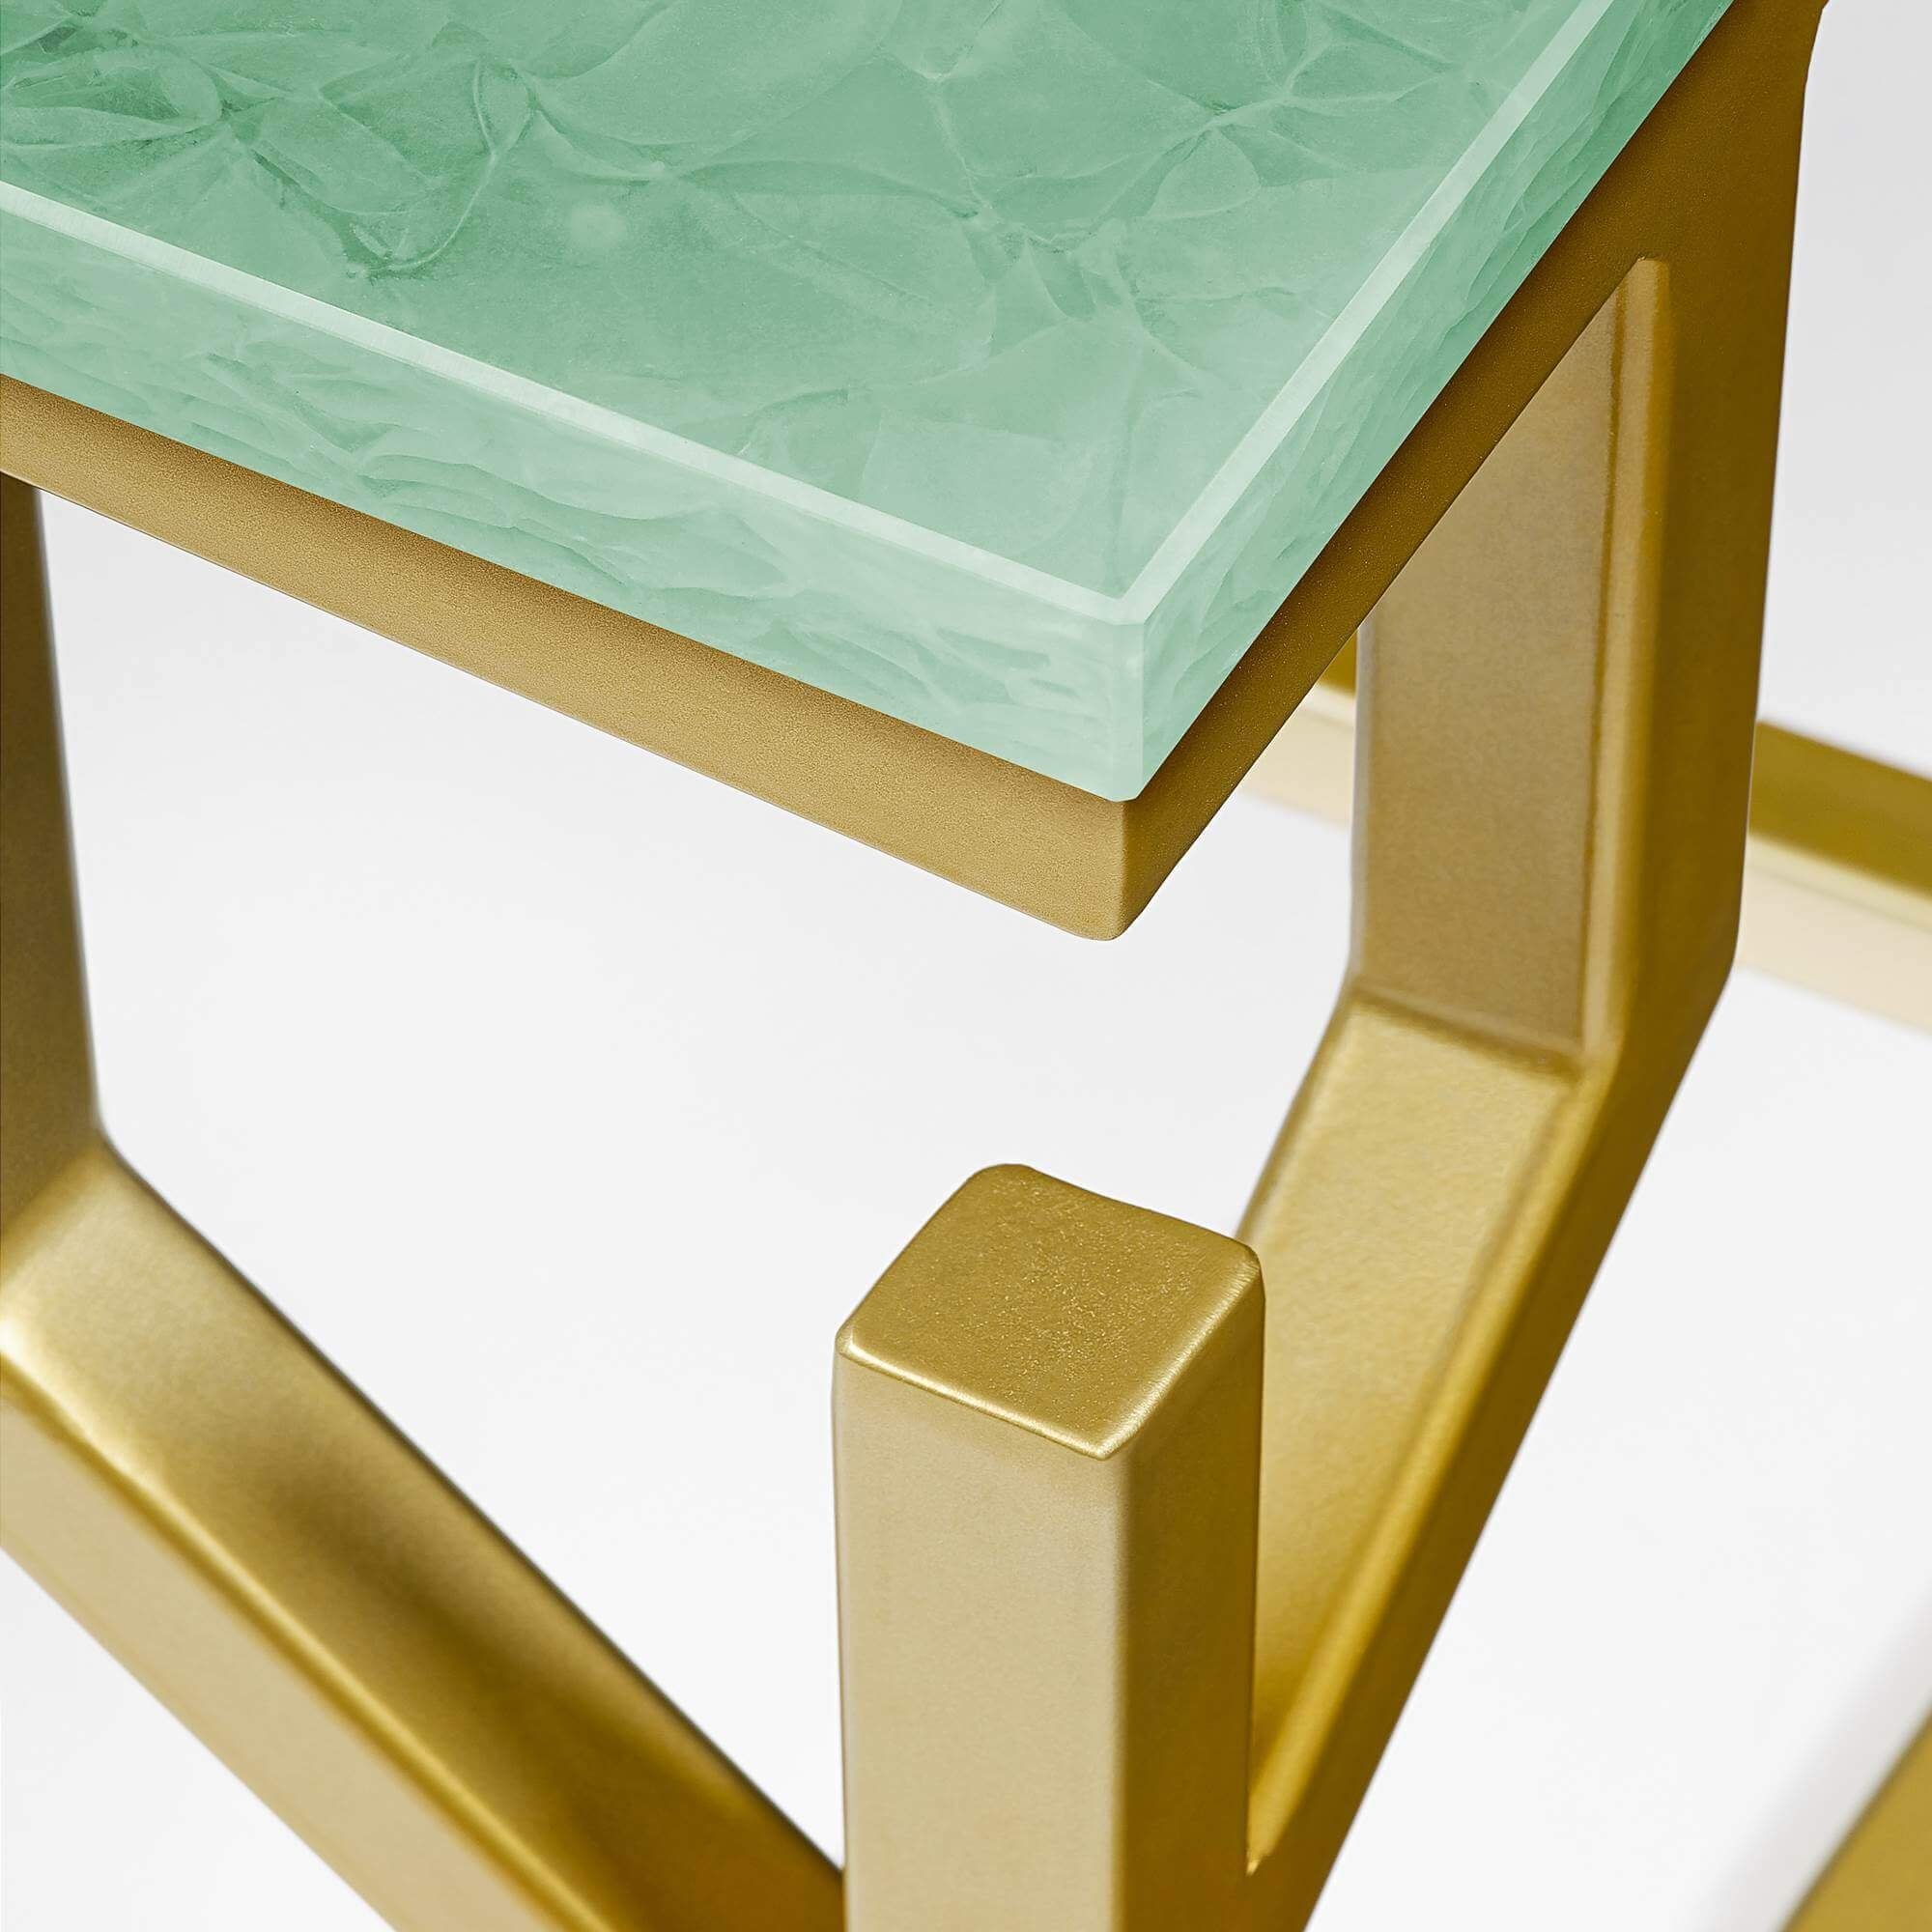 CORAL MAGNA mit BAY gold Atelier 50x50x50cm Ablagetisch Green eckig, GLASKERAMIK, Beistelltisch Metallgestell, Jade